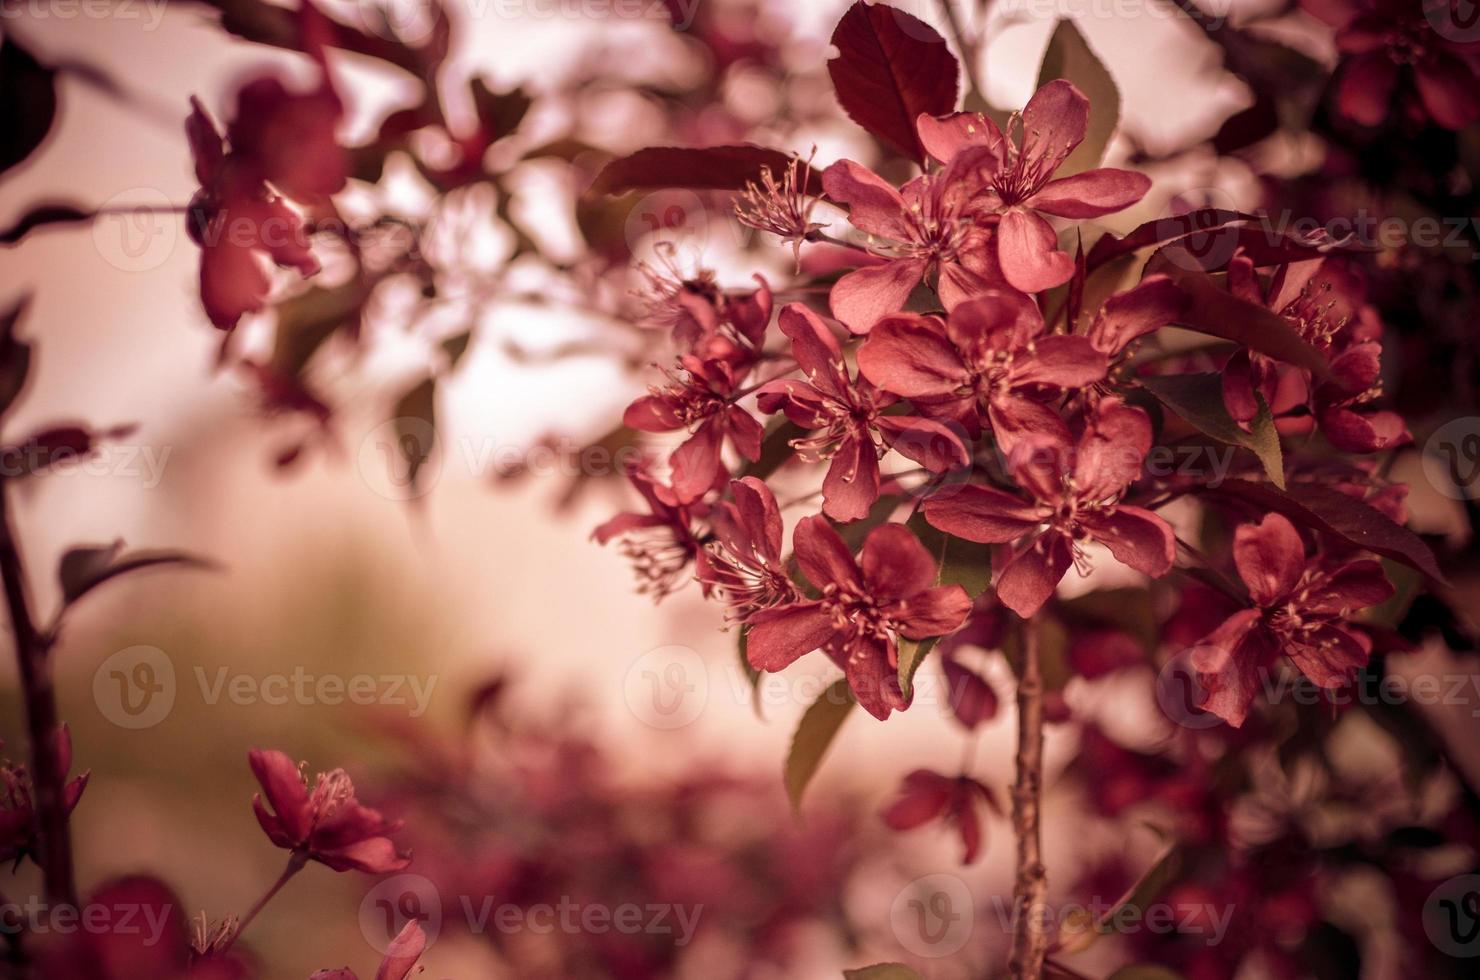 pommier malus domestica fleurit au printemps variété redevance photo